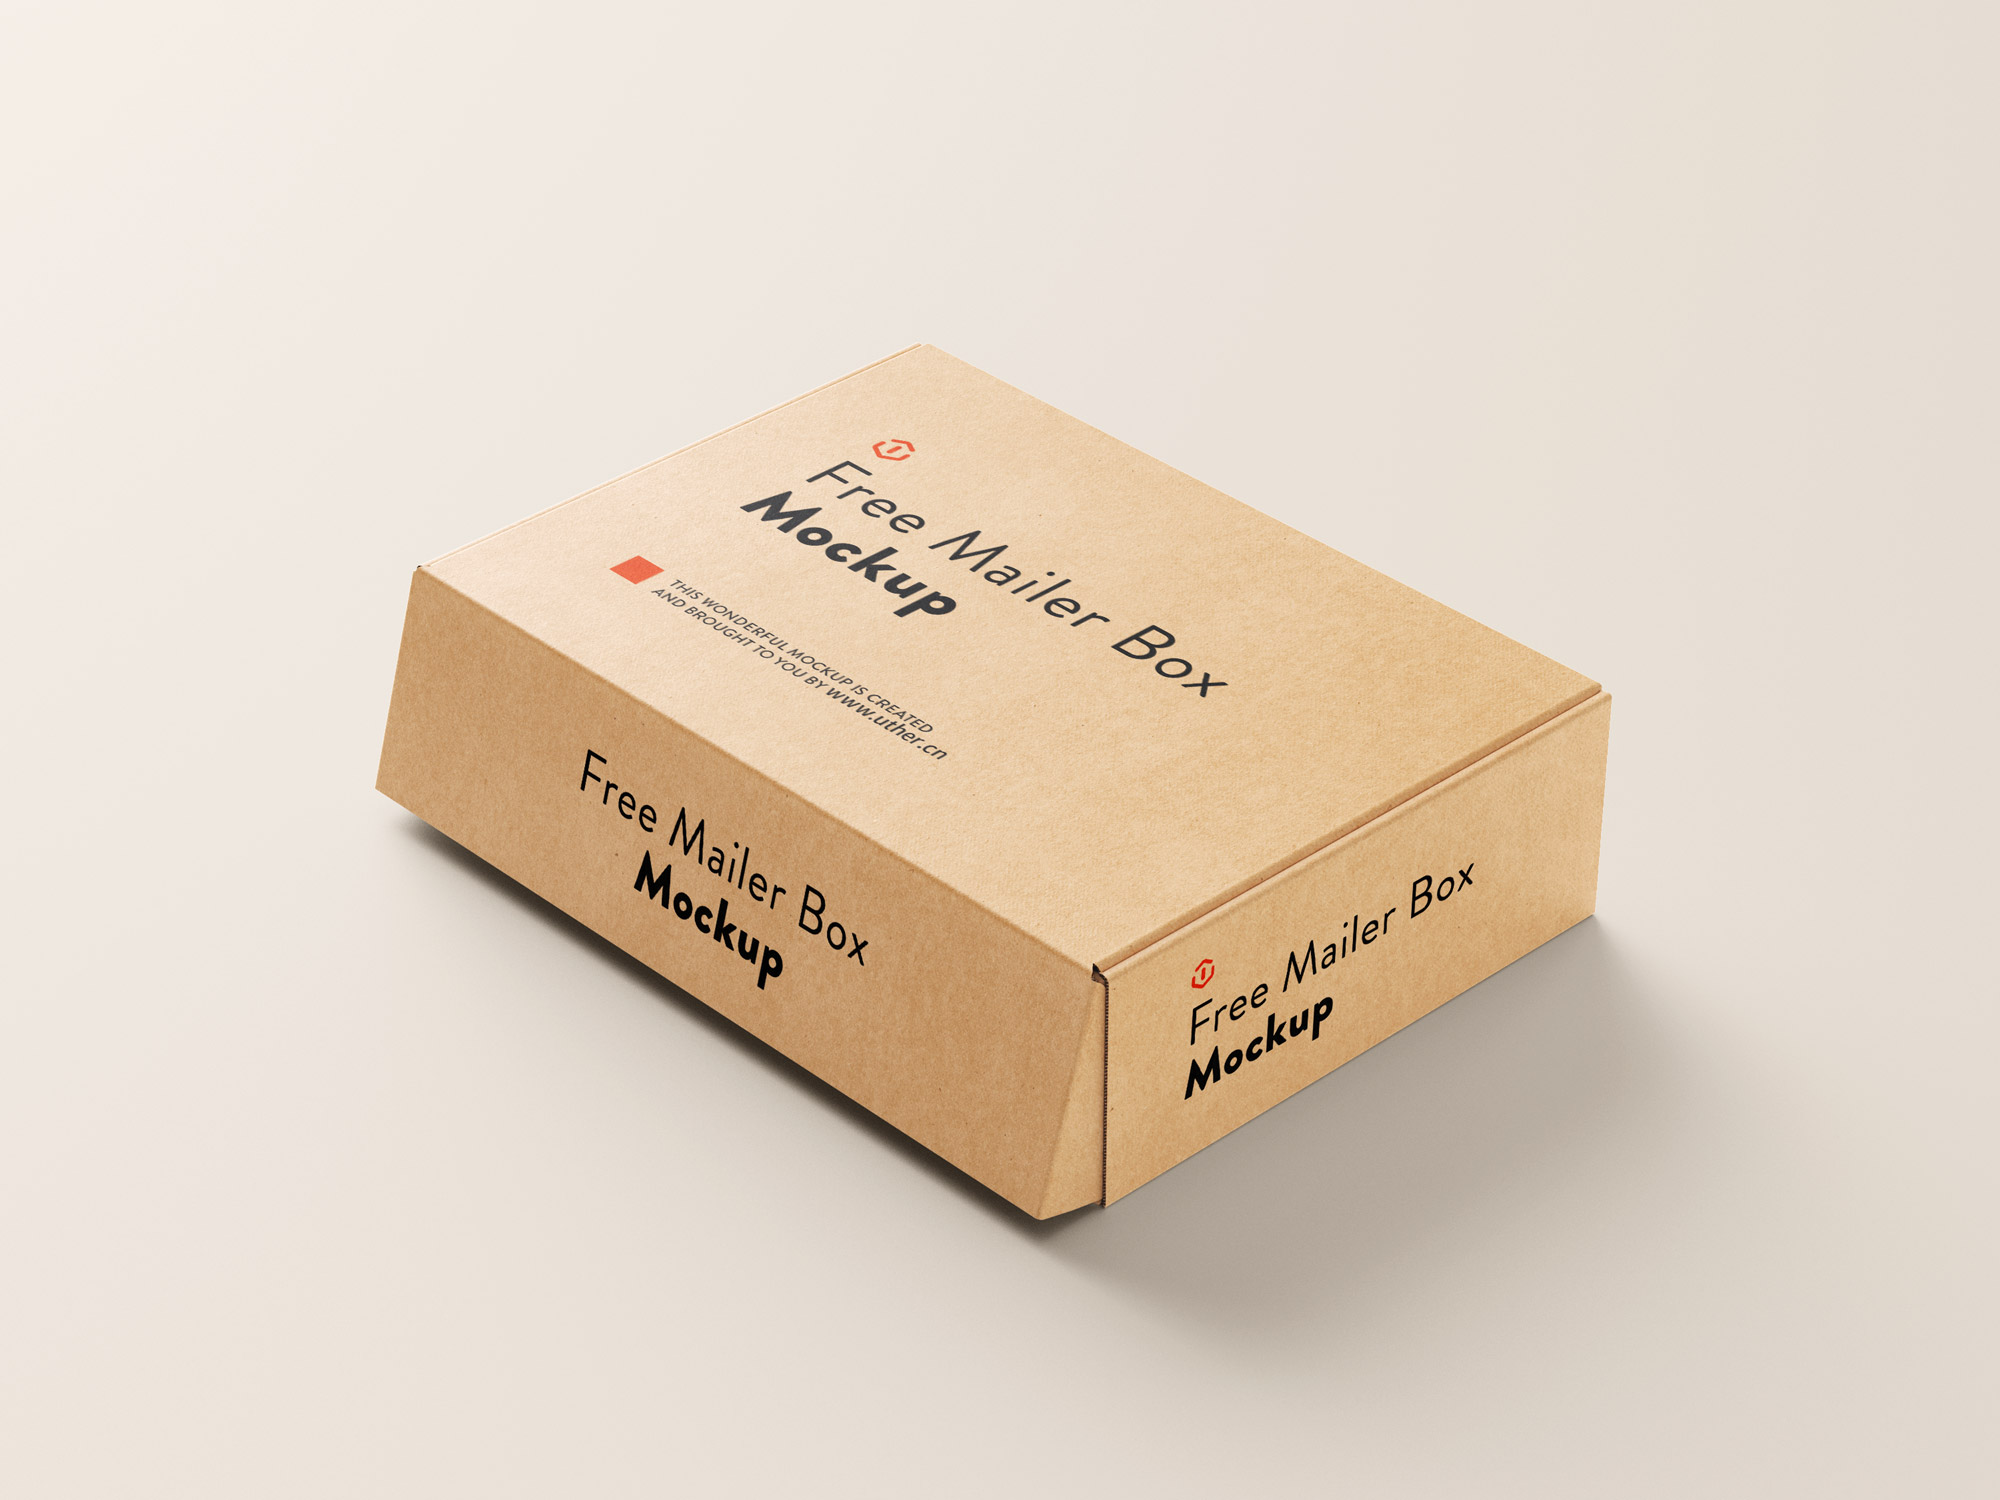 长方形包装盒快递盒纸盒设计包装模型PSD样机素材box mockup